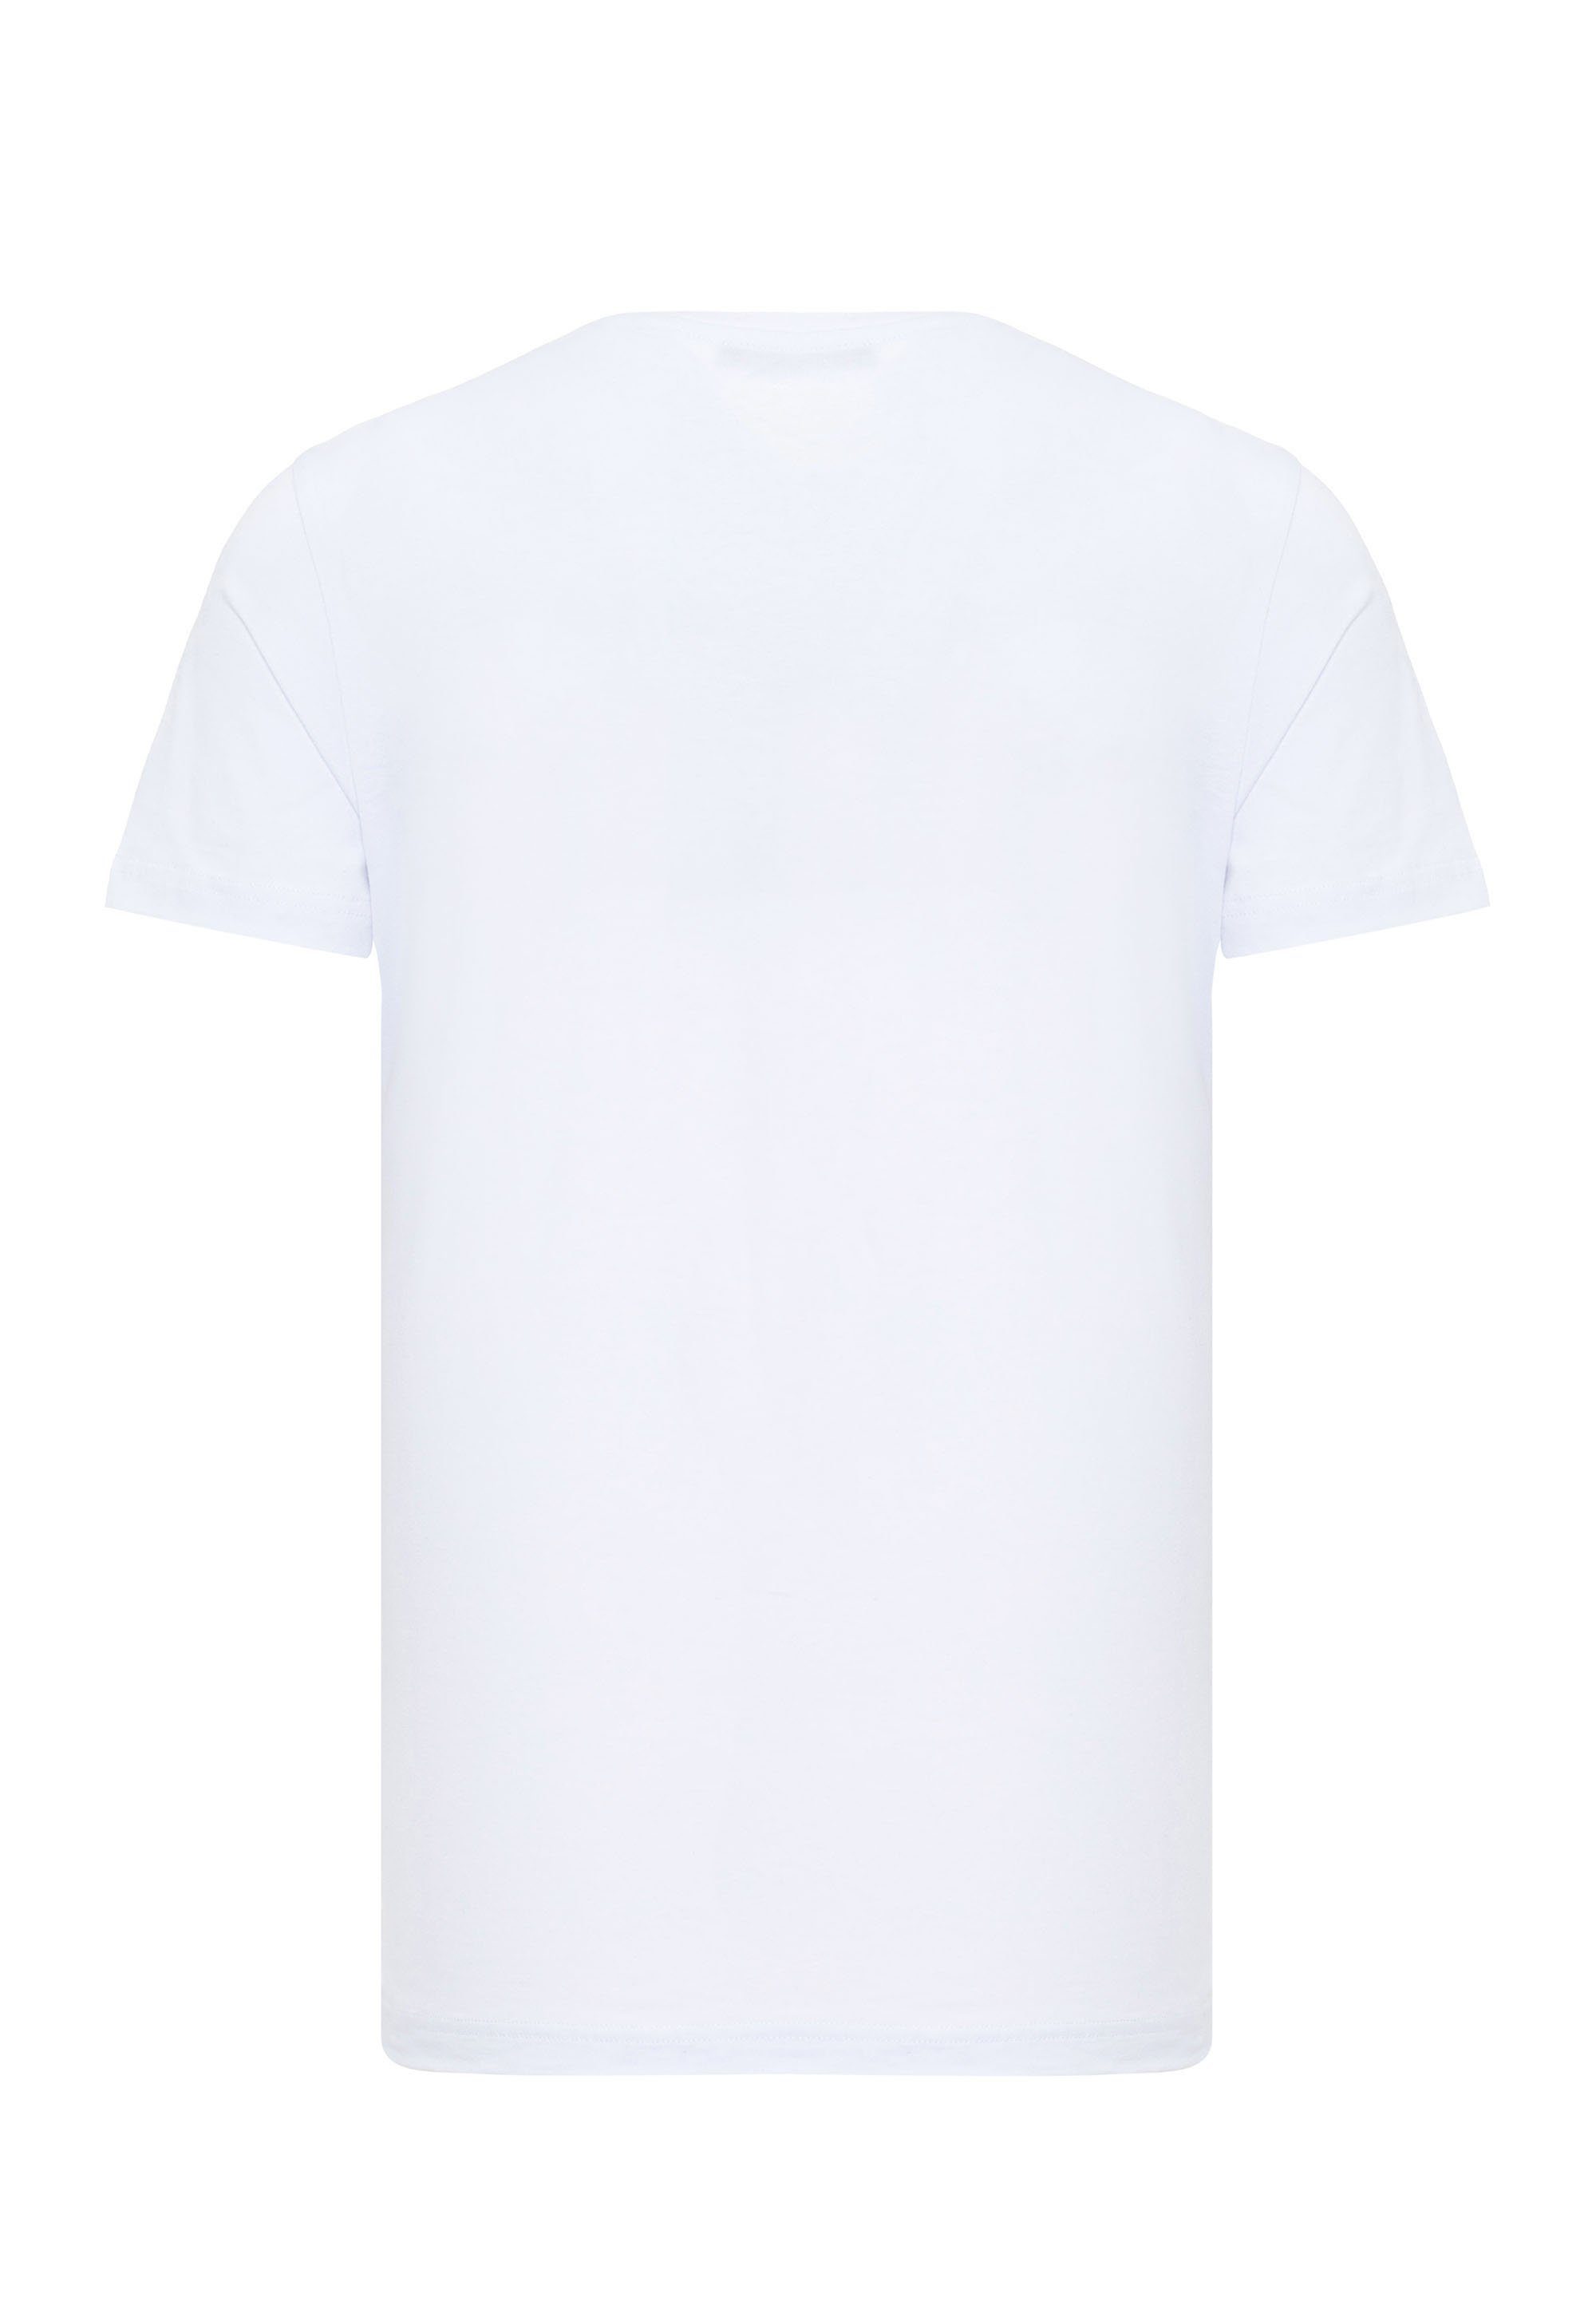 Cipo & Baxx T-Shirt Money-Frontprint mit weiß großem